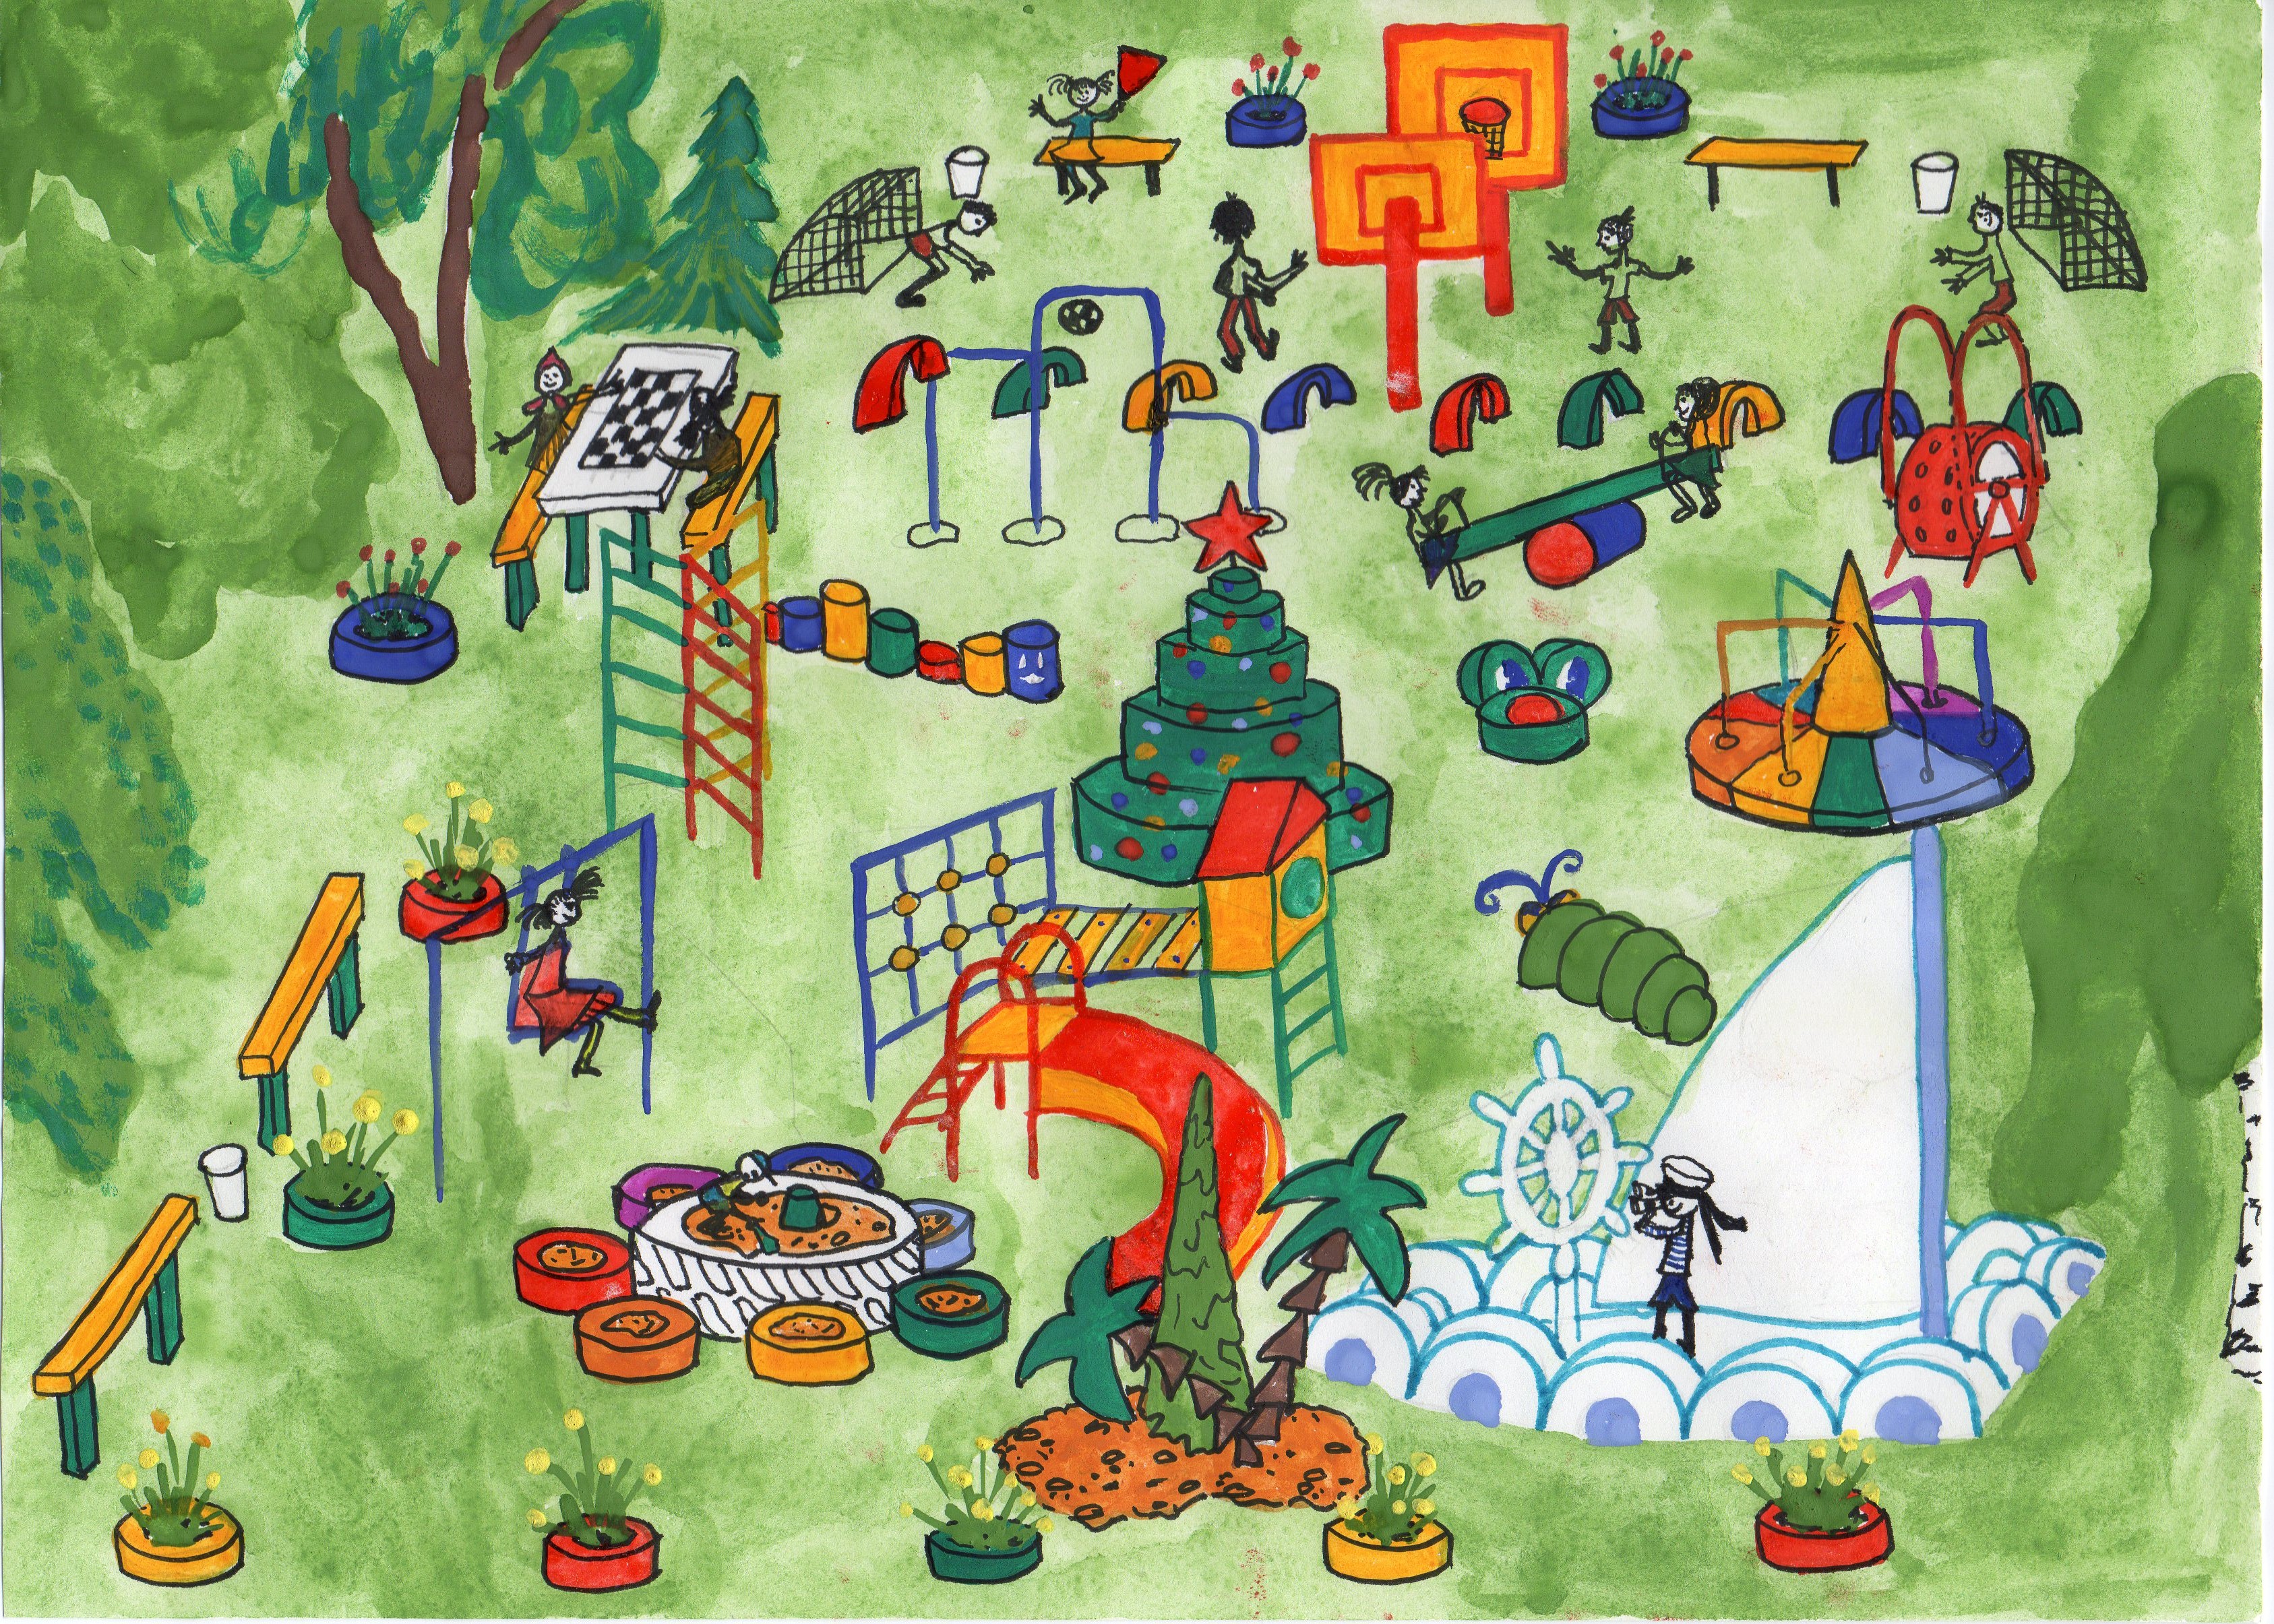 Минстрой области объявил конкурс «Детская площадка моей мечты» |  Официальный сайт Администрации города Малоярославца